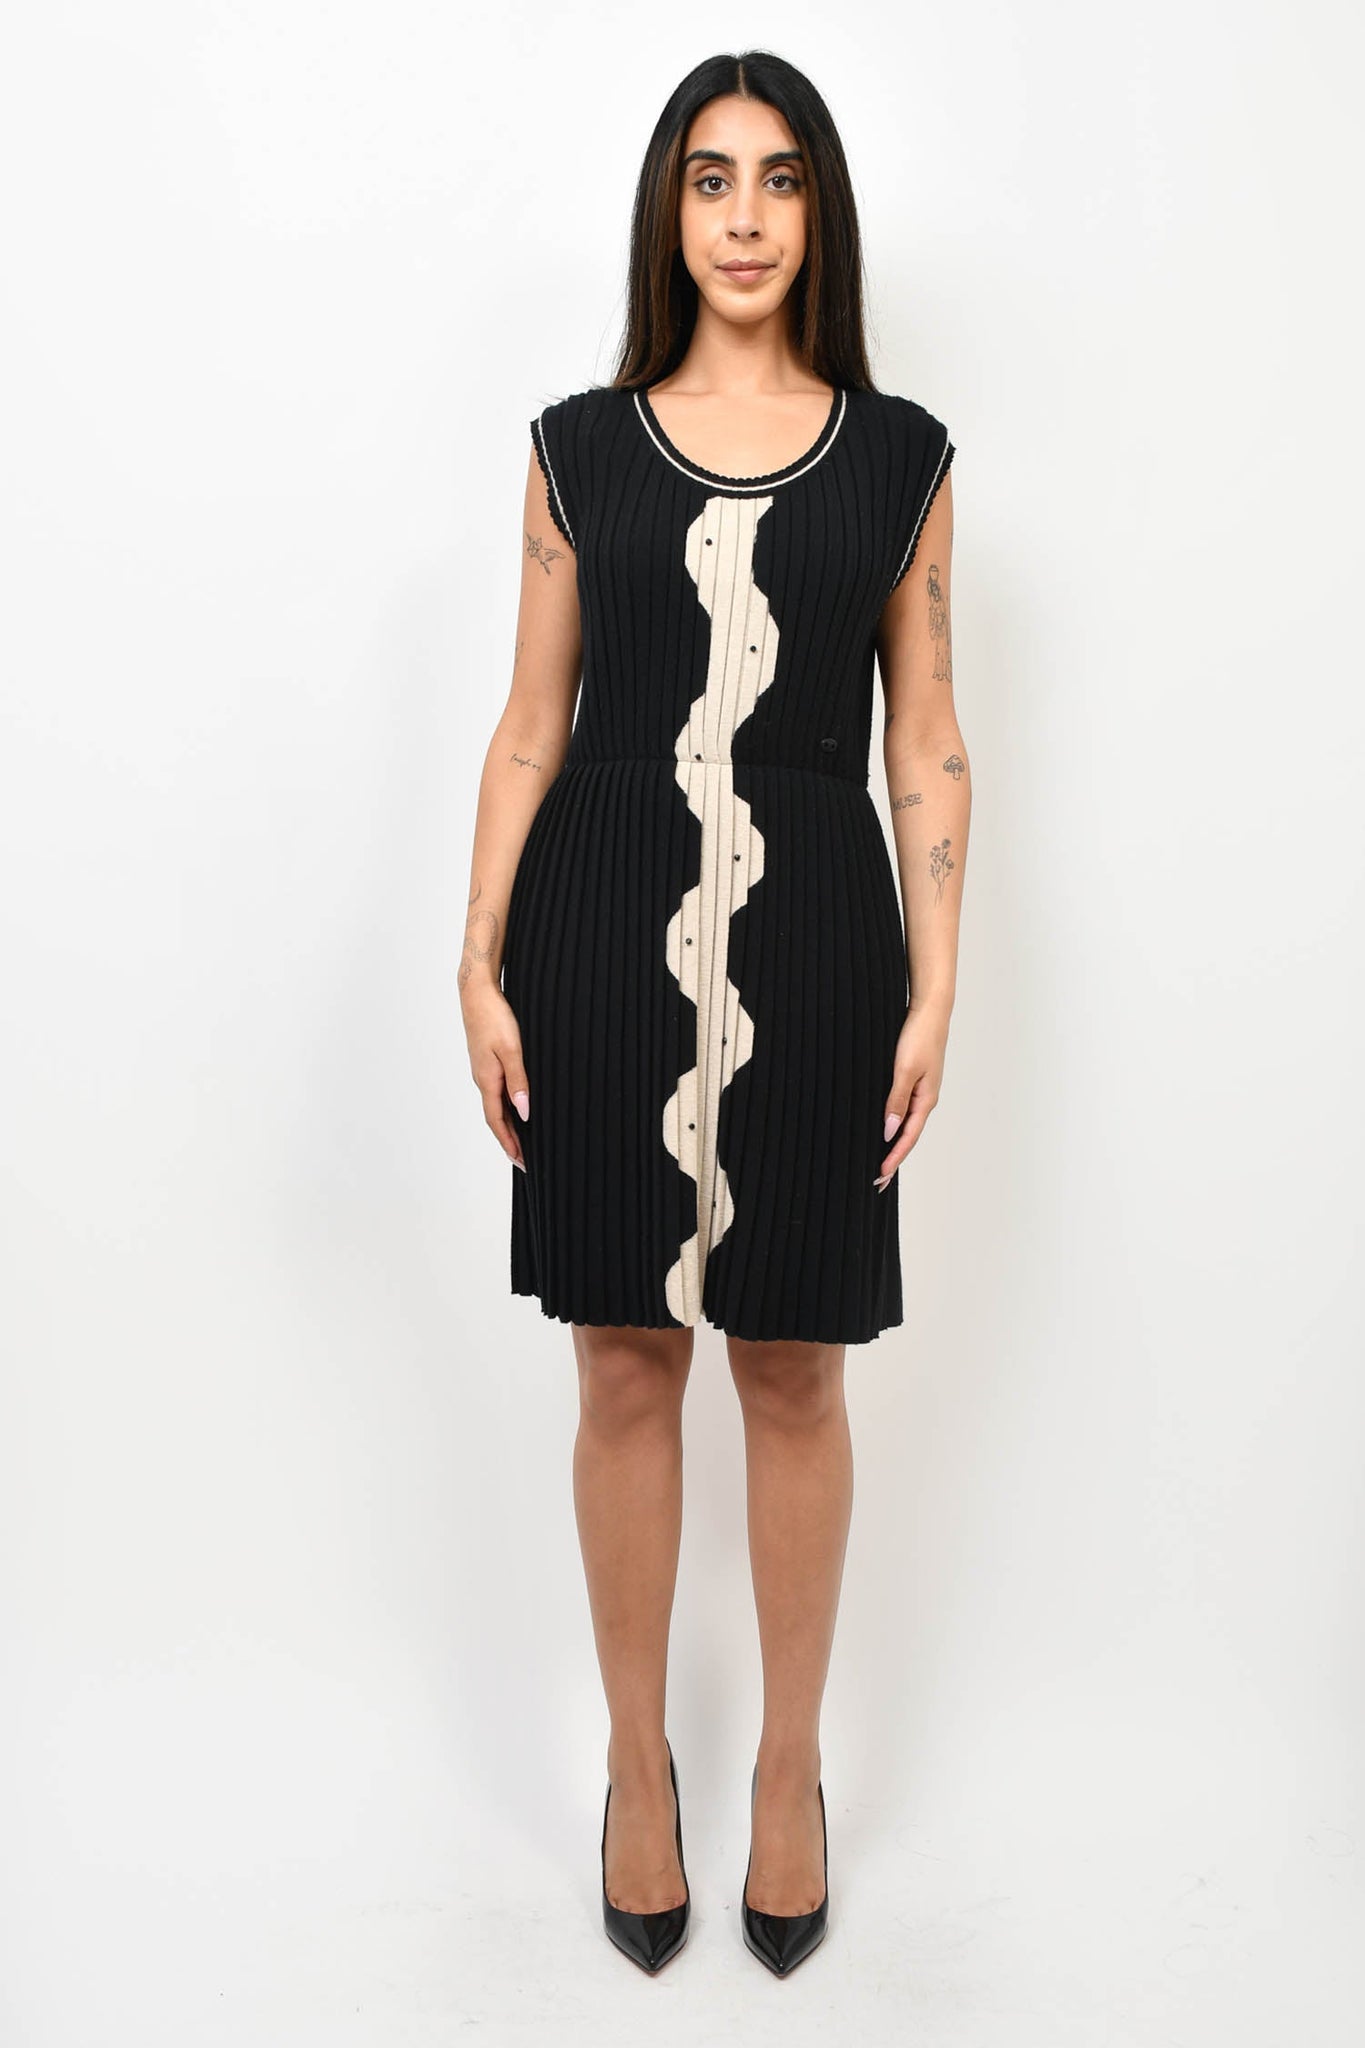 Pre-loved Chanel™ Fall 2007 Black/Beige Wool Knit Sleeveless Dress Size 40